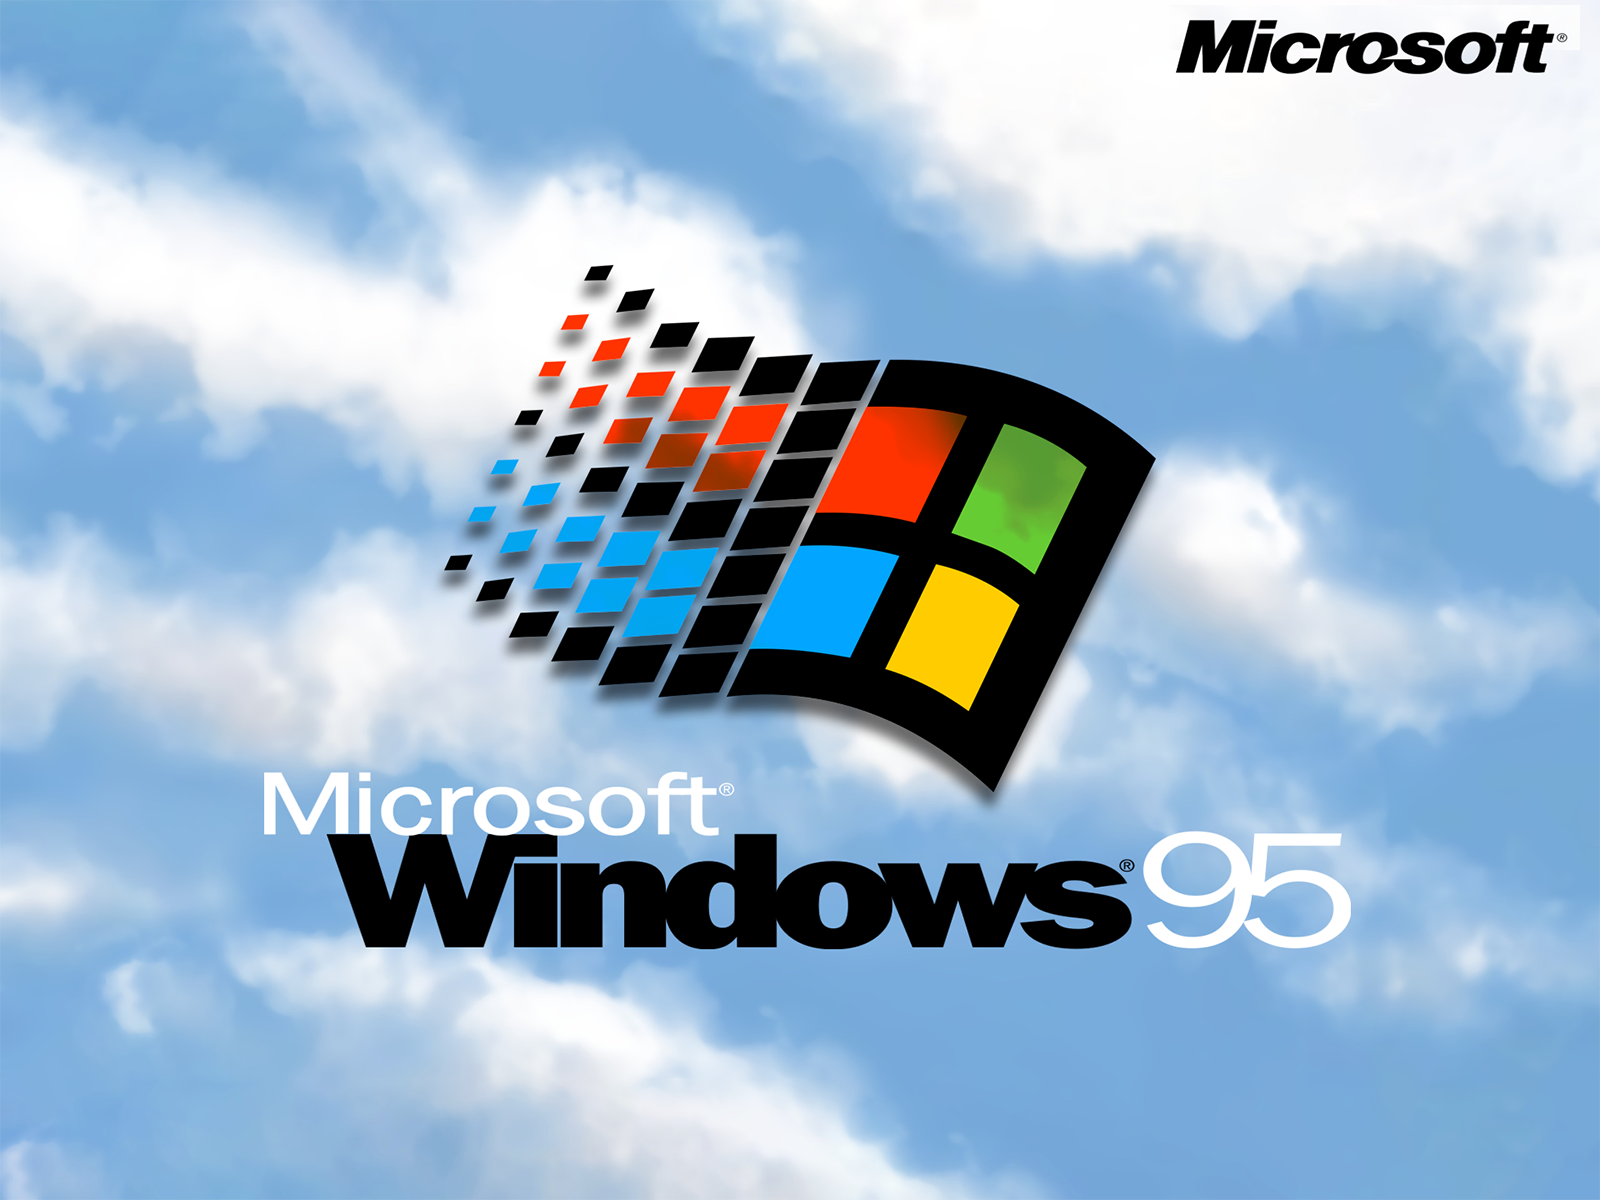 Tổng hợp Windows 95 background image wallpaper đình đám nhất thập ...